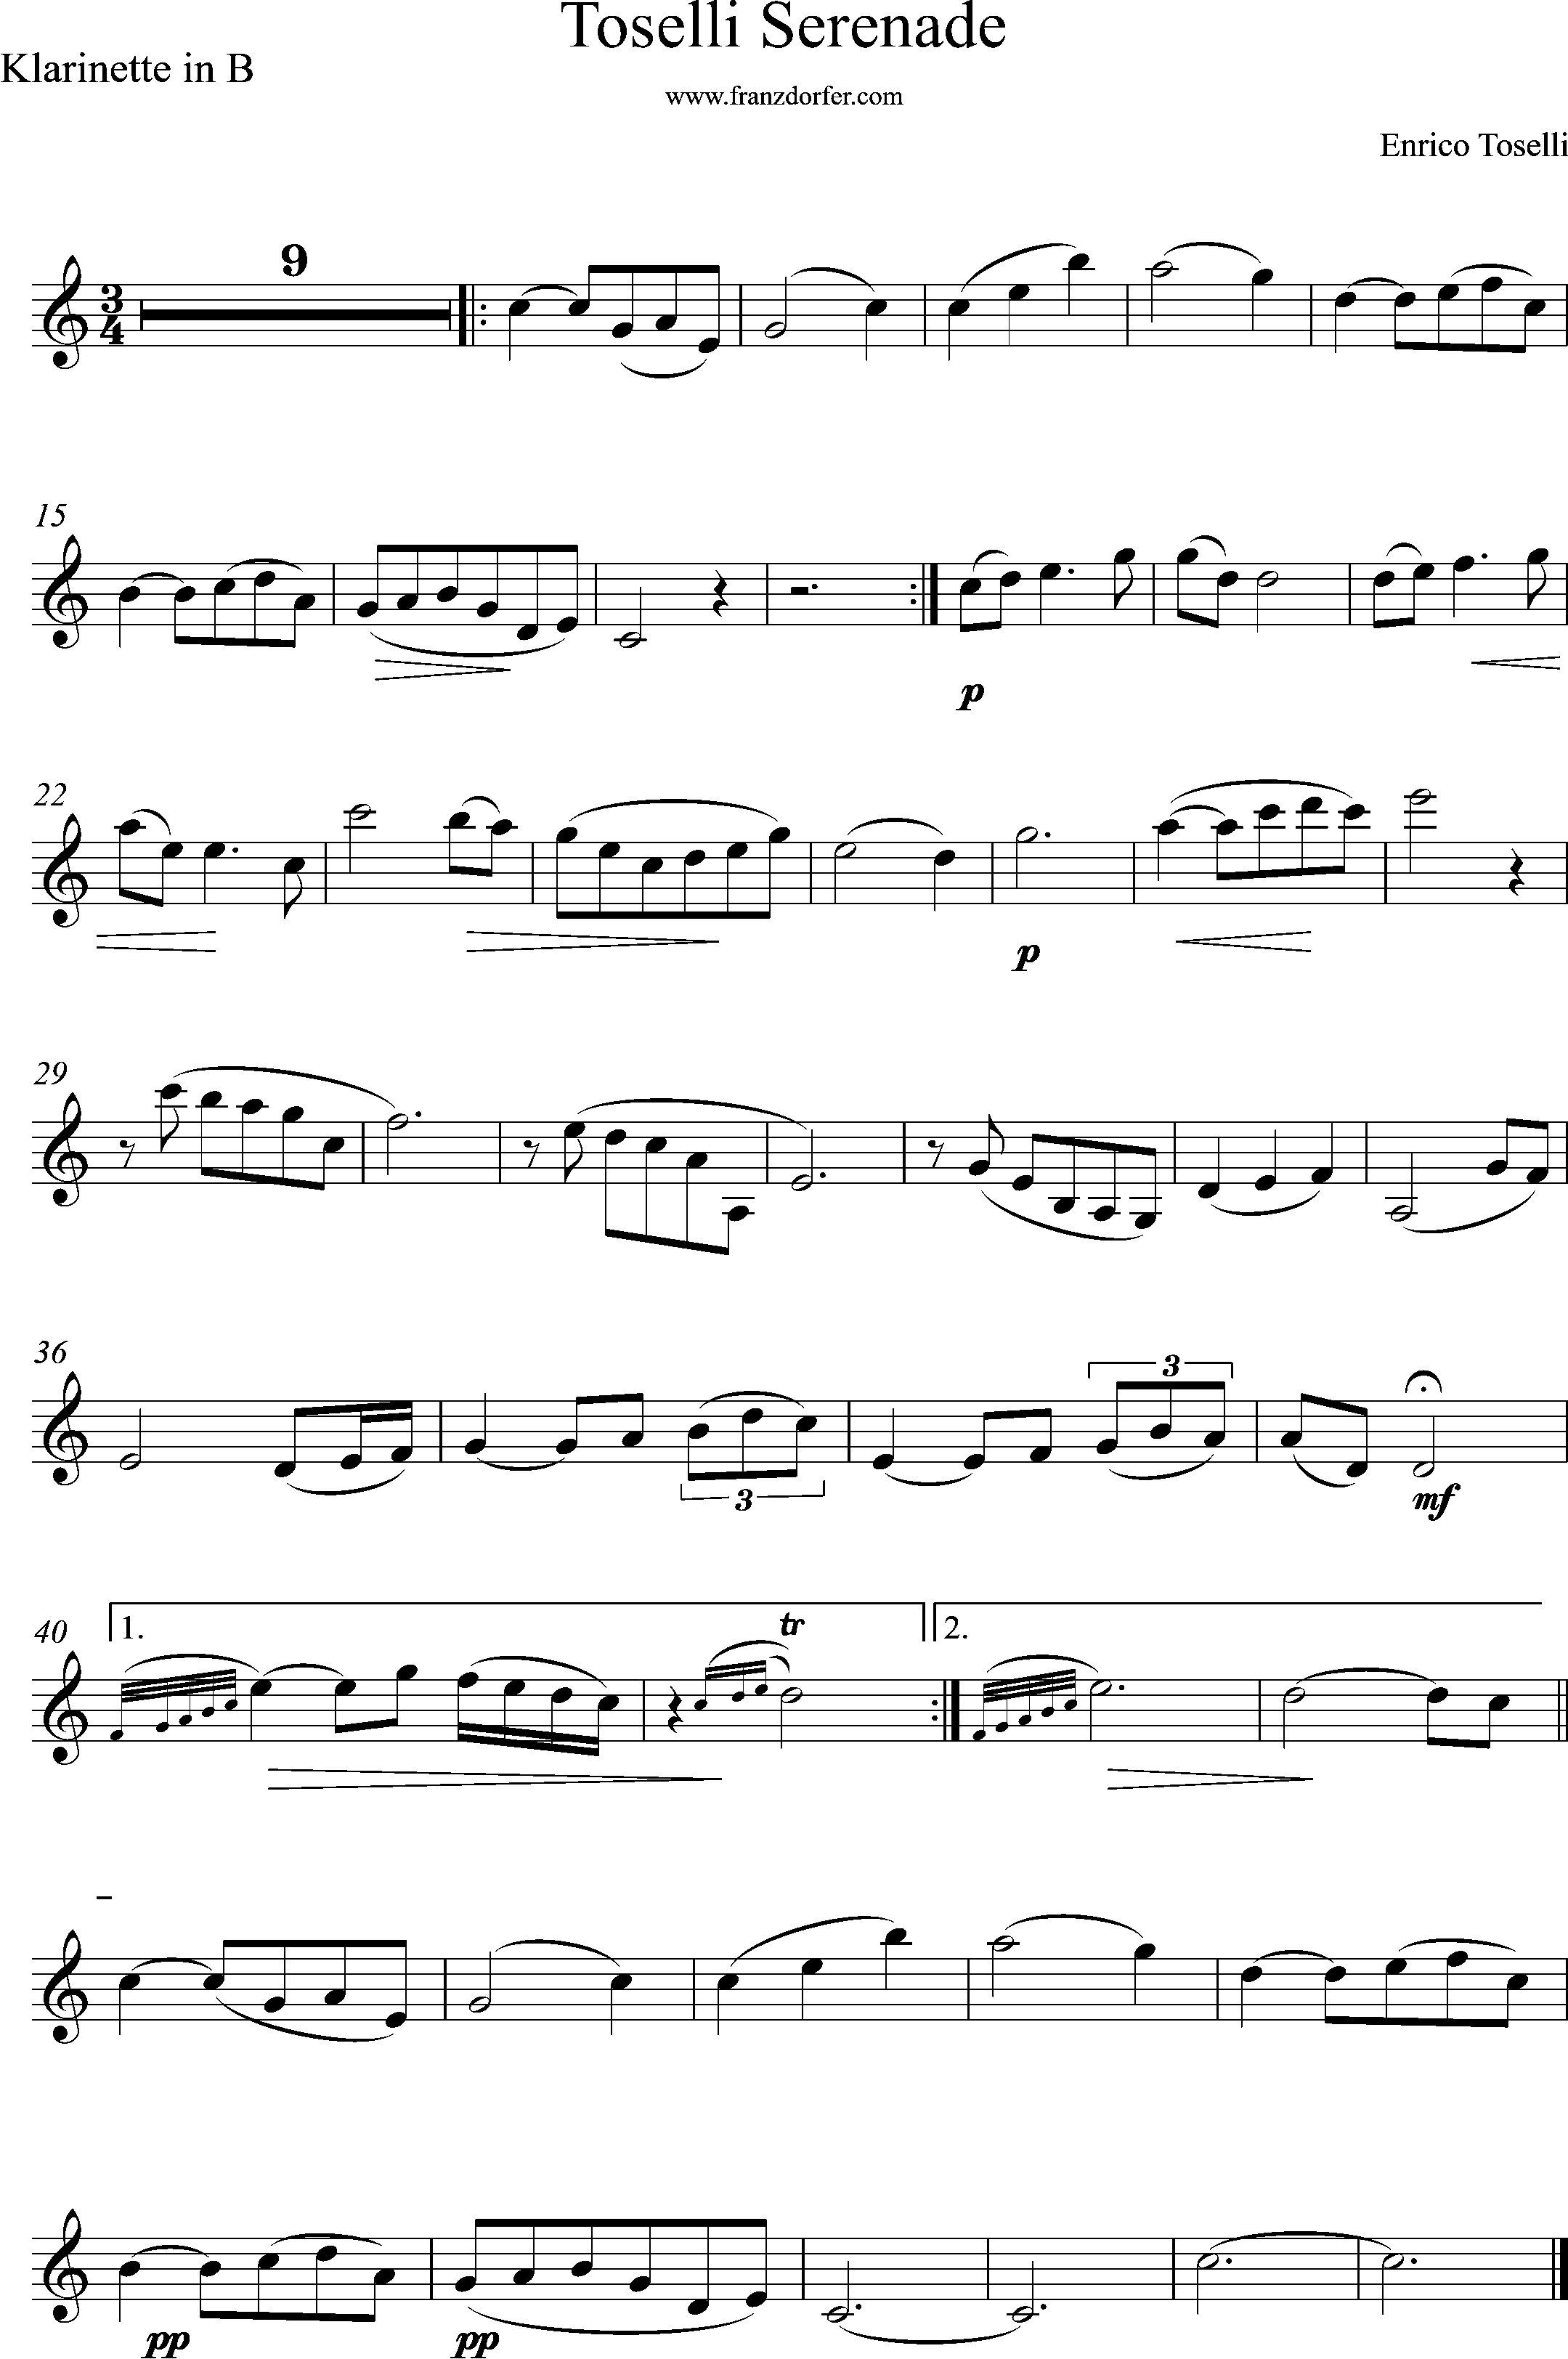 Clarinet, sheetmusic